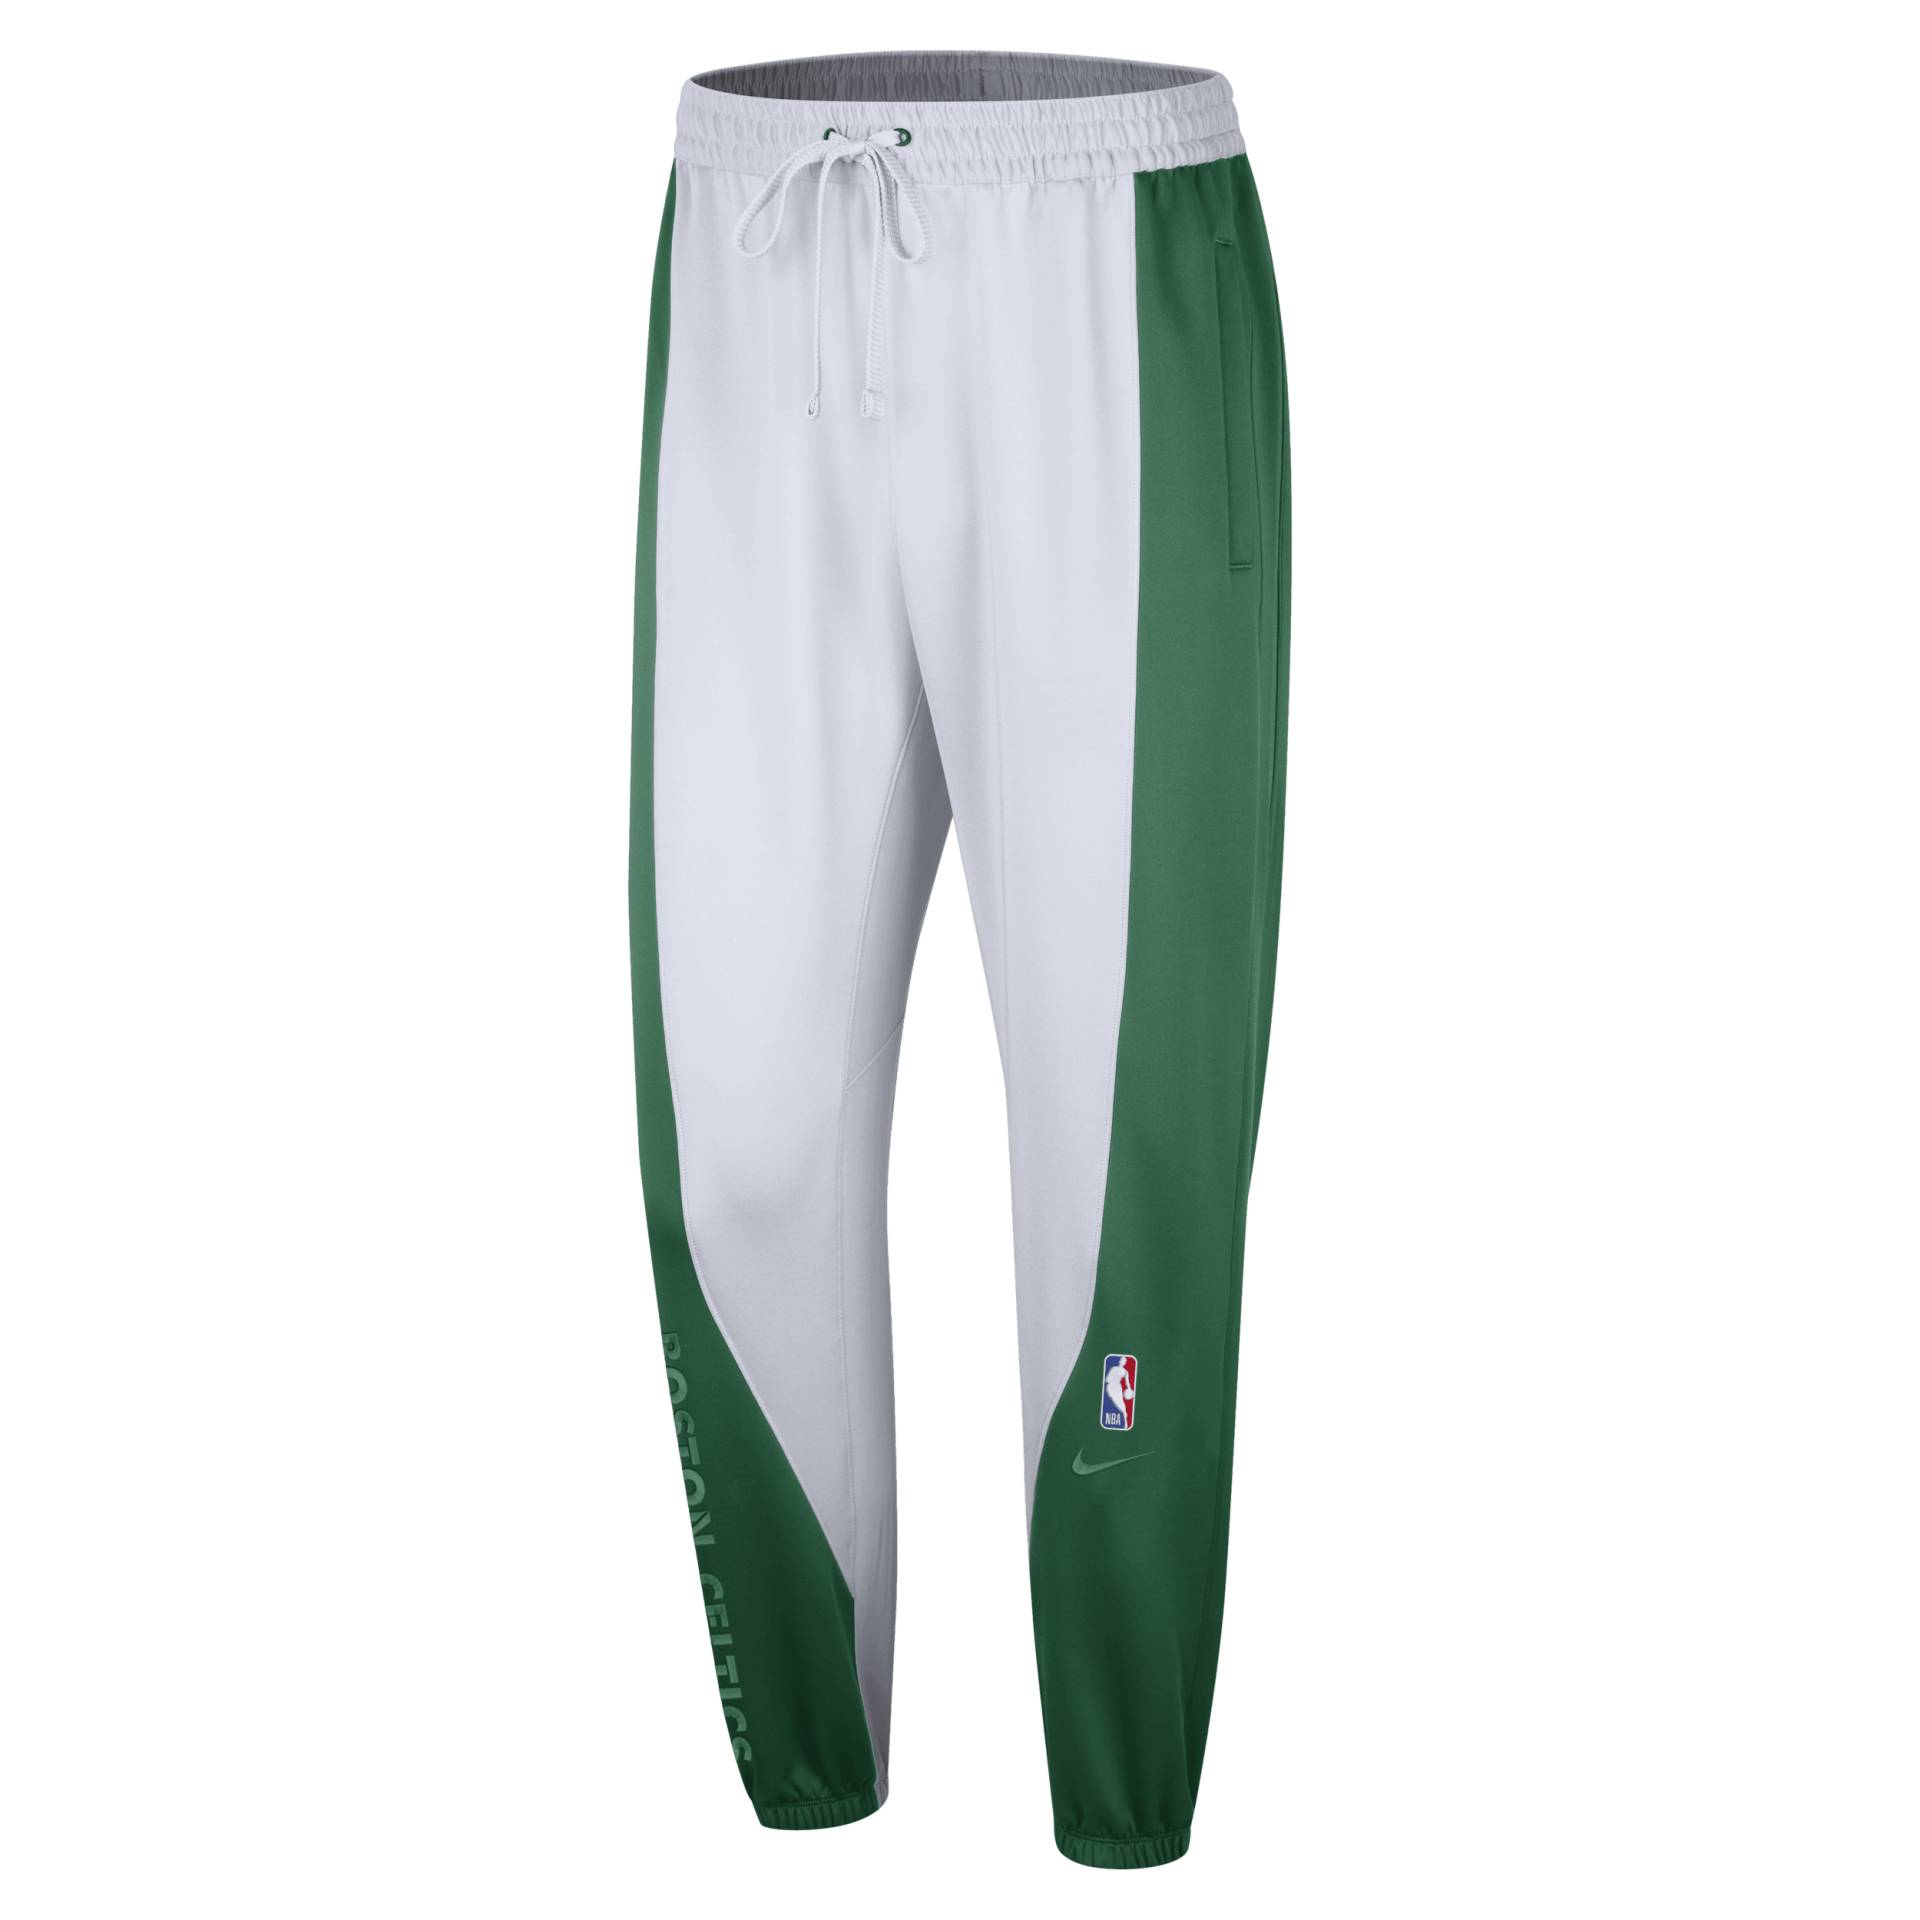 Boston Celtics Showtime Nike Dri-FIT NBA-Hose für Herren - Grün von Nike